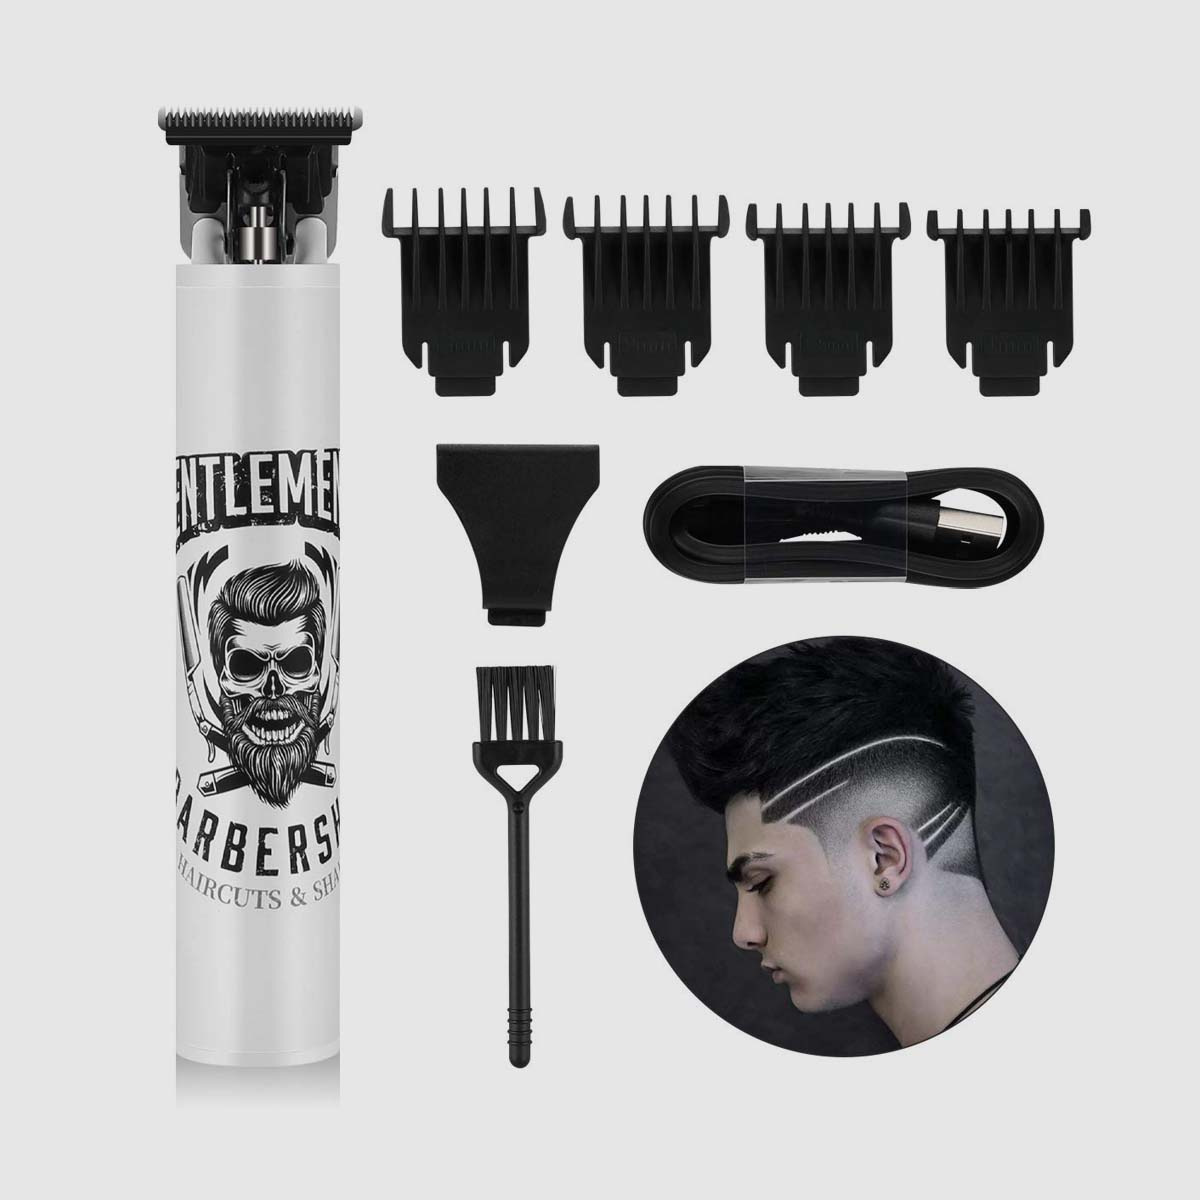 Kit de tratamento de barbeiro para tosquiadoras elétricas Pro Li Outliner